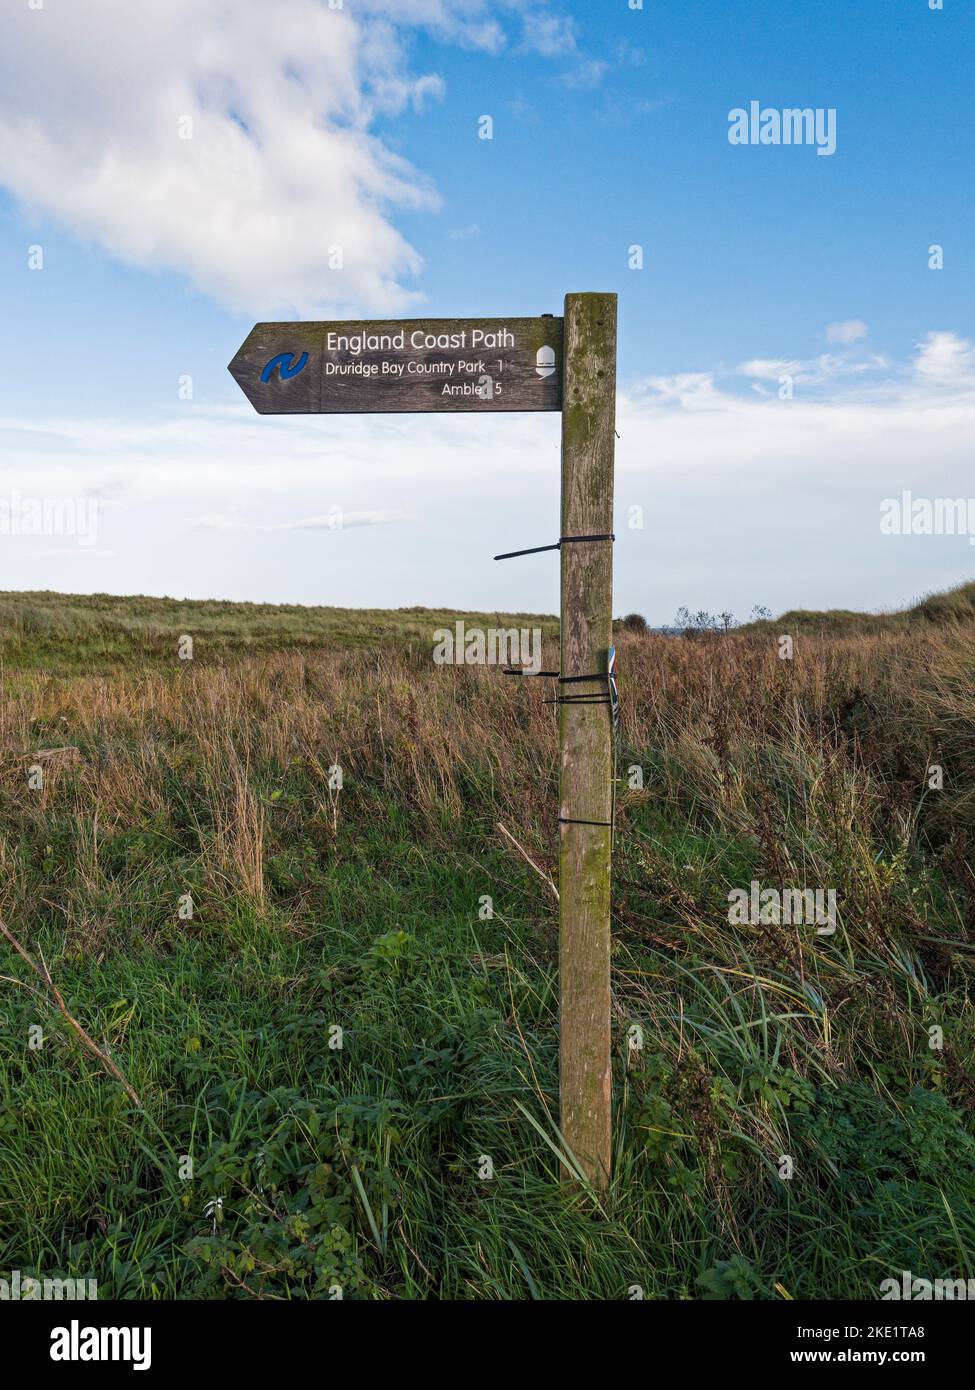 England Coast Path sign at Druridge Bay, Northumberland, UK Stock Photo